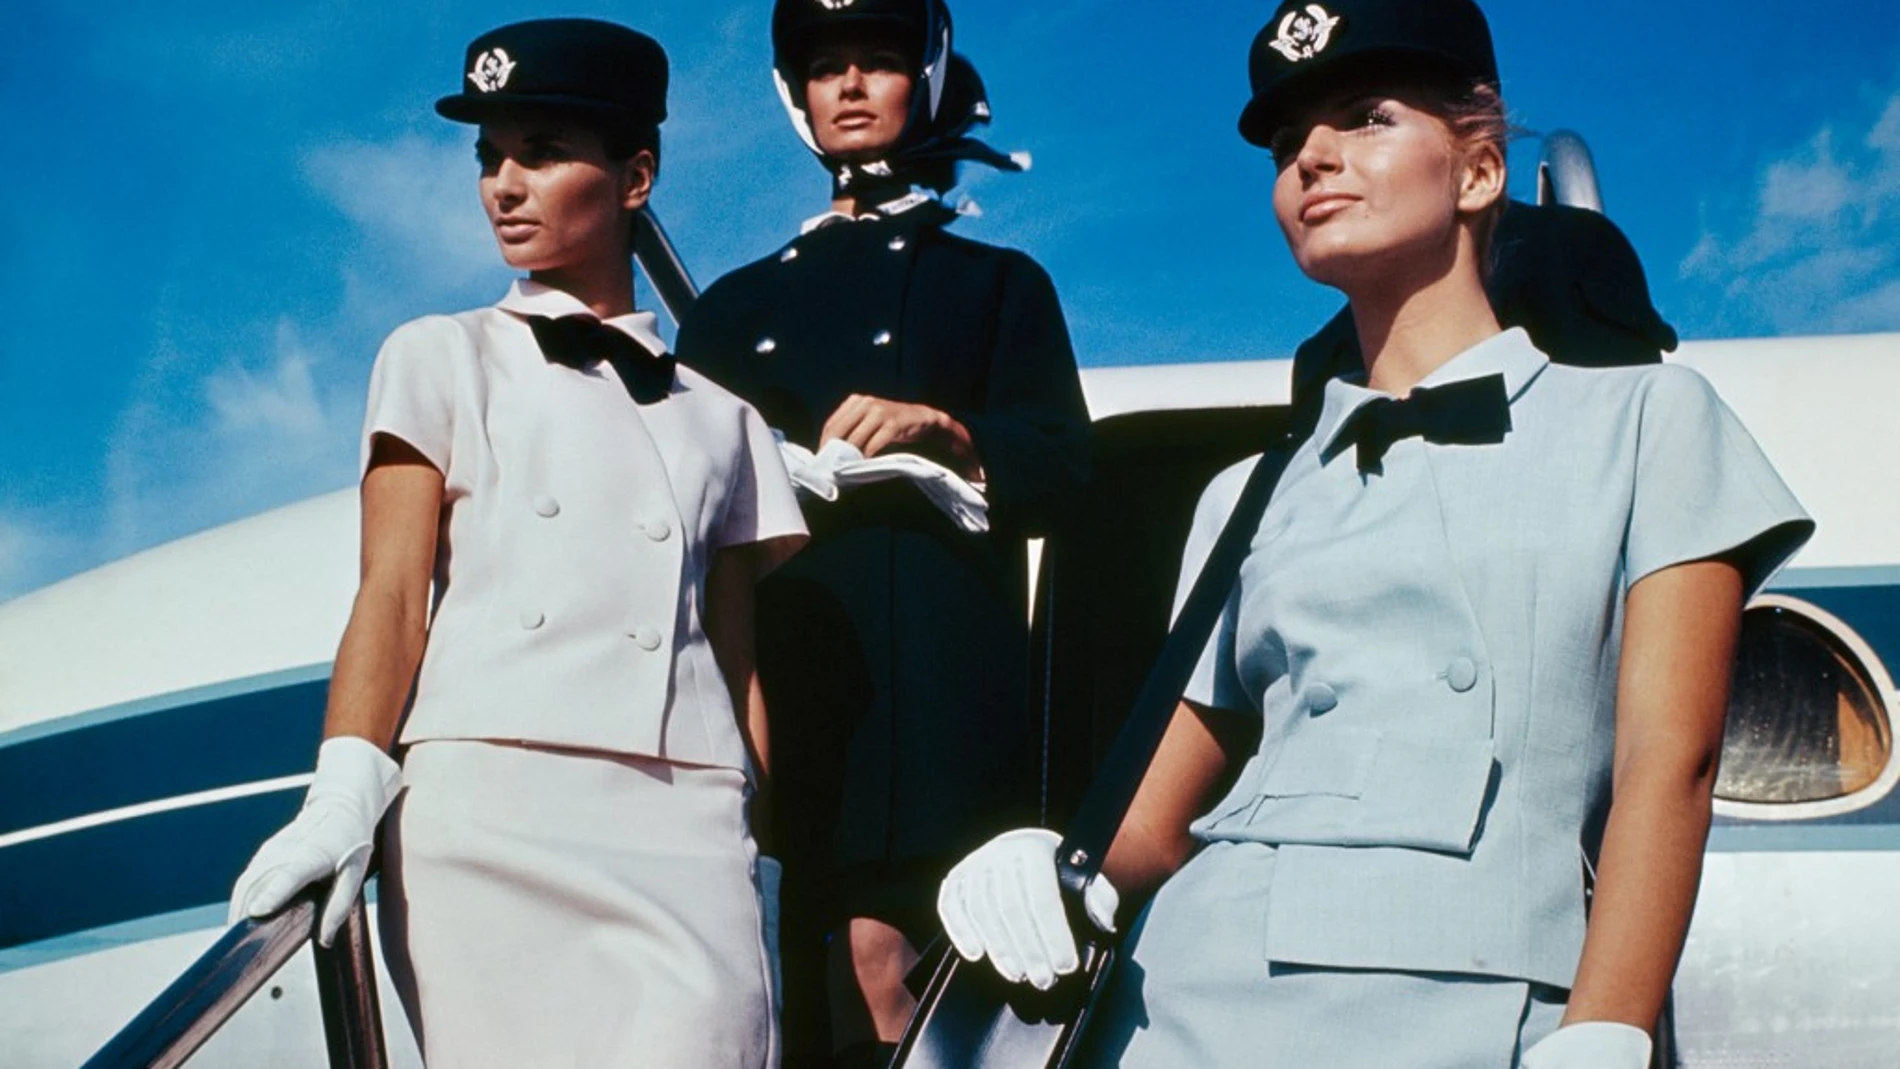 Estos diseños fueron de los últimos proyectos en los que trabajó el diseñador Cristobal Balenciaga. En 1969 creó unos uniformes elegantes y cómodos para la tripulación de Air France.